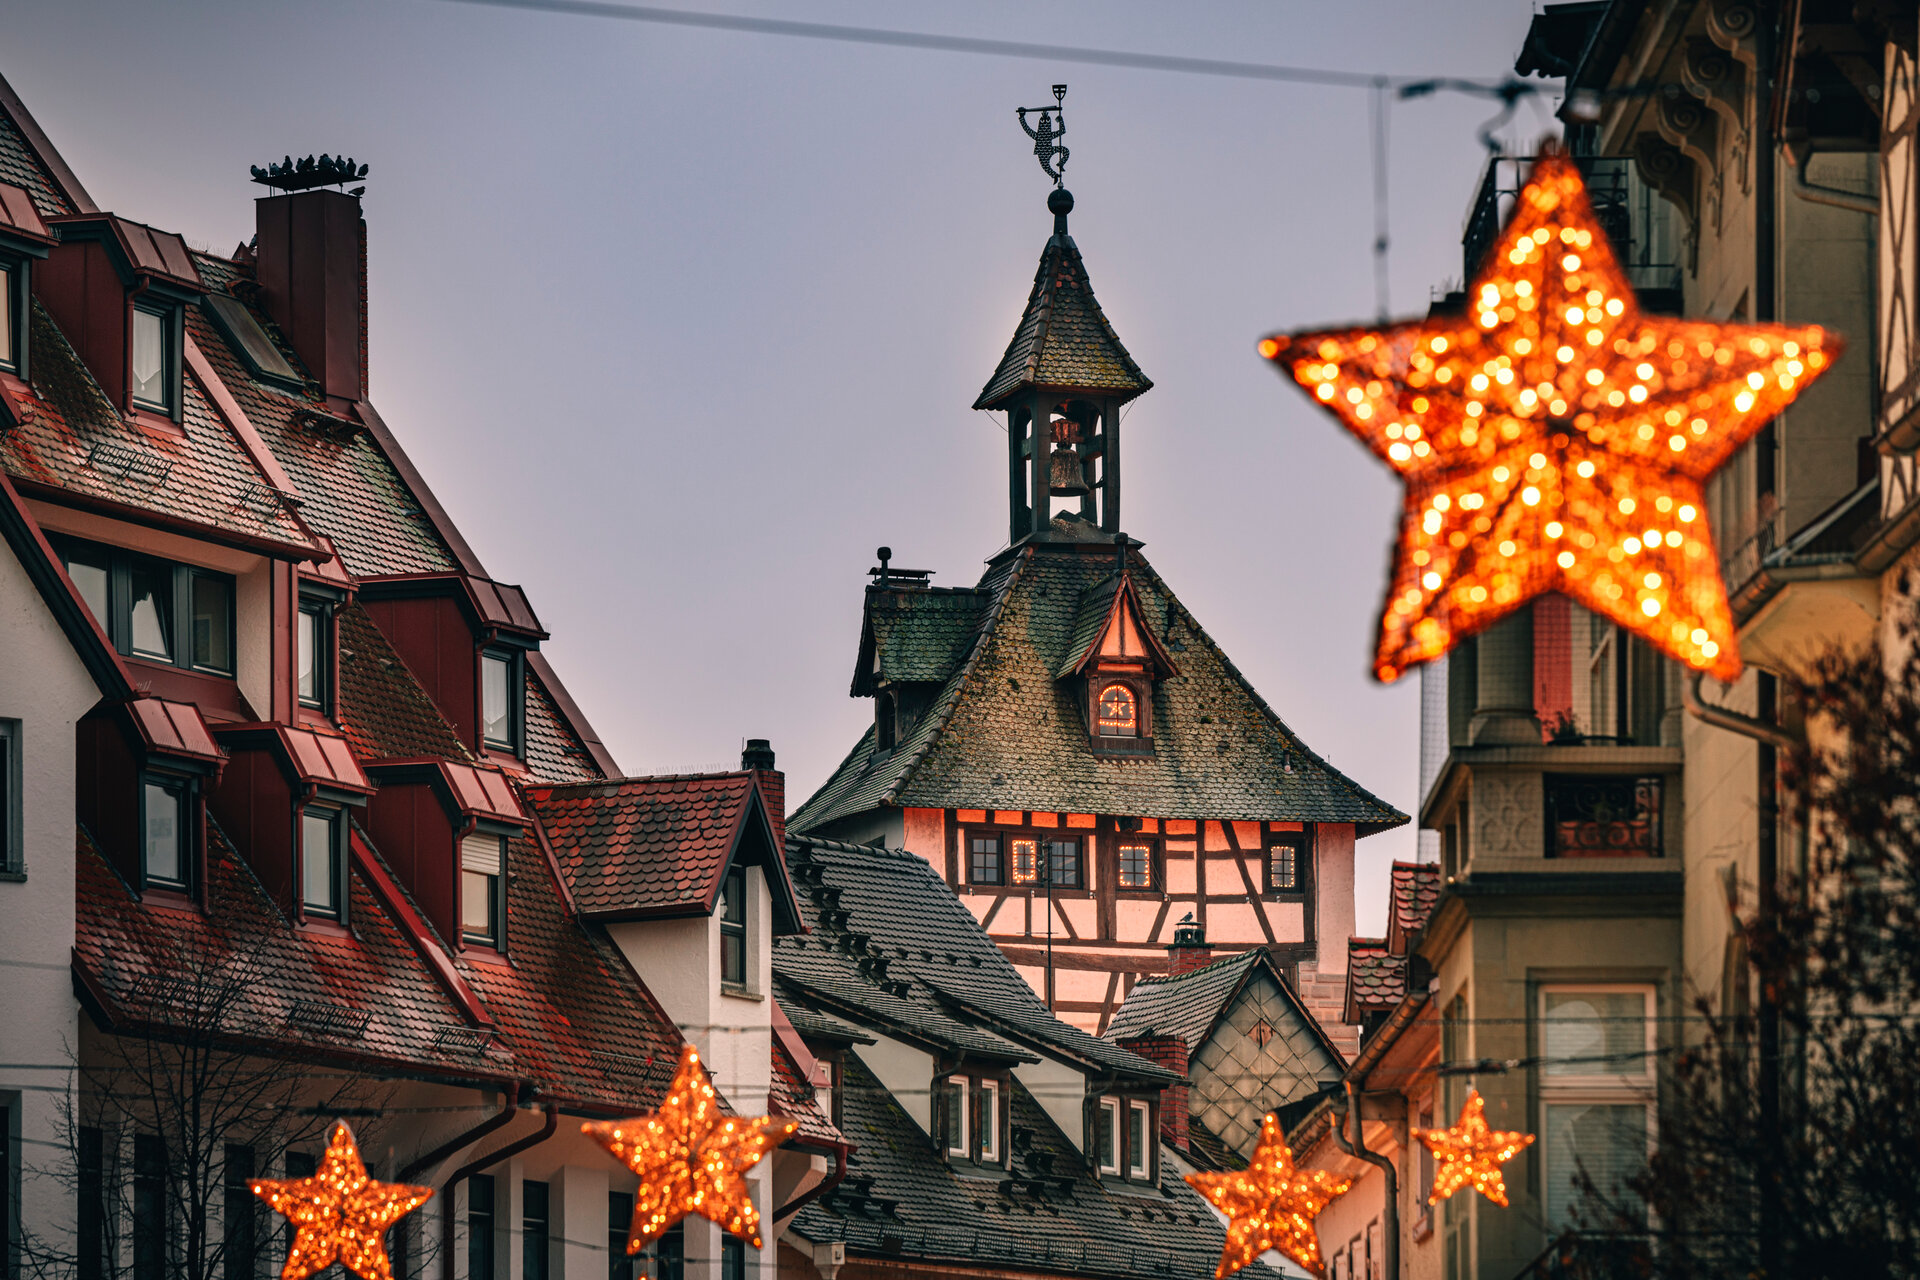 Konstanz-Altstadt-Schnetztor-Weihnachtsbeleuchtung-Abend-03_Copyright_MTK-Leo-Leister